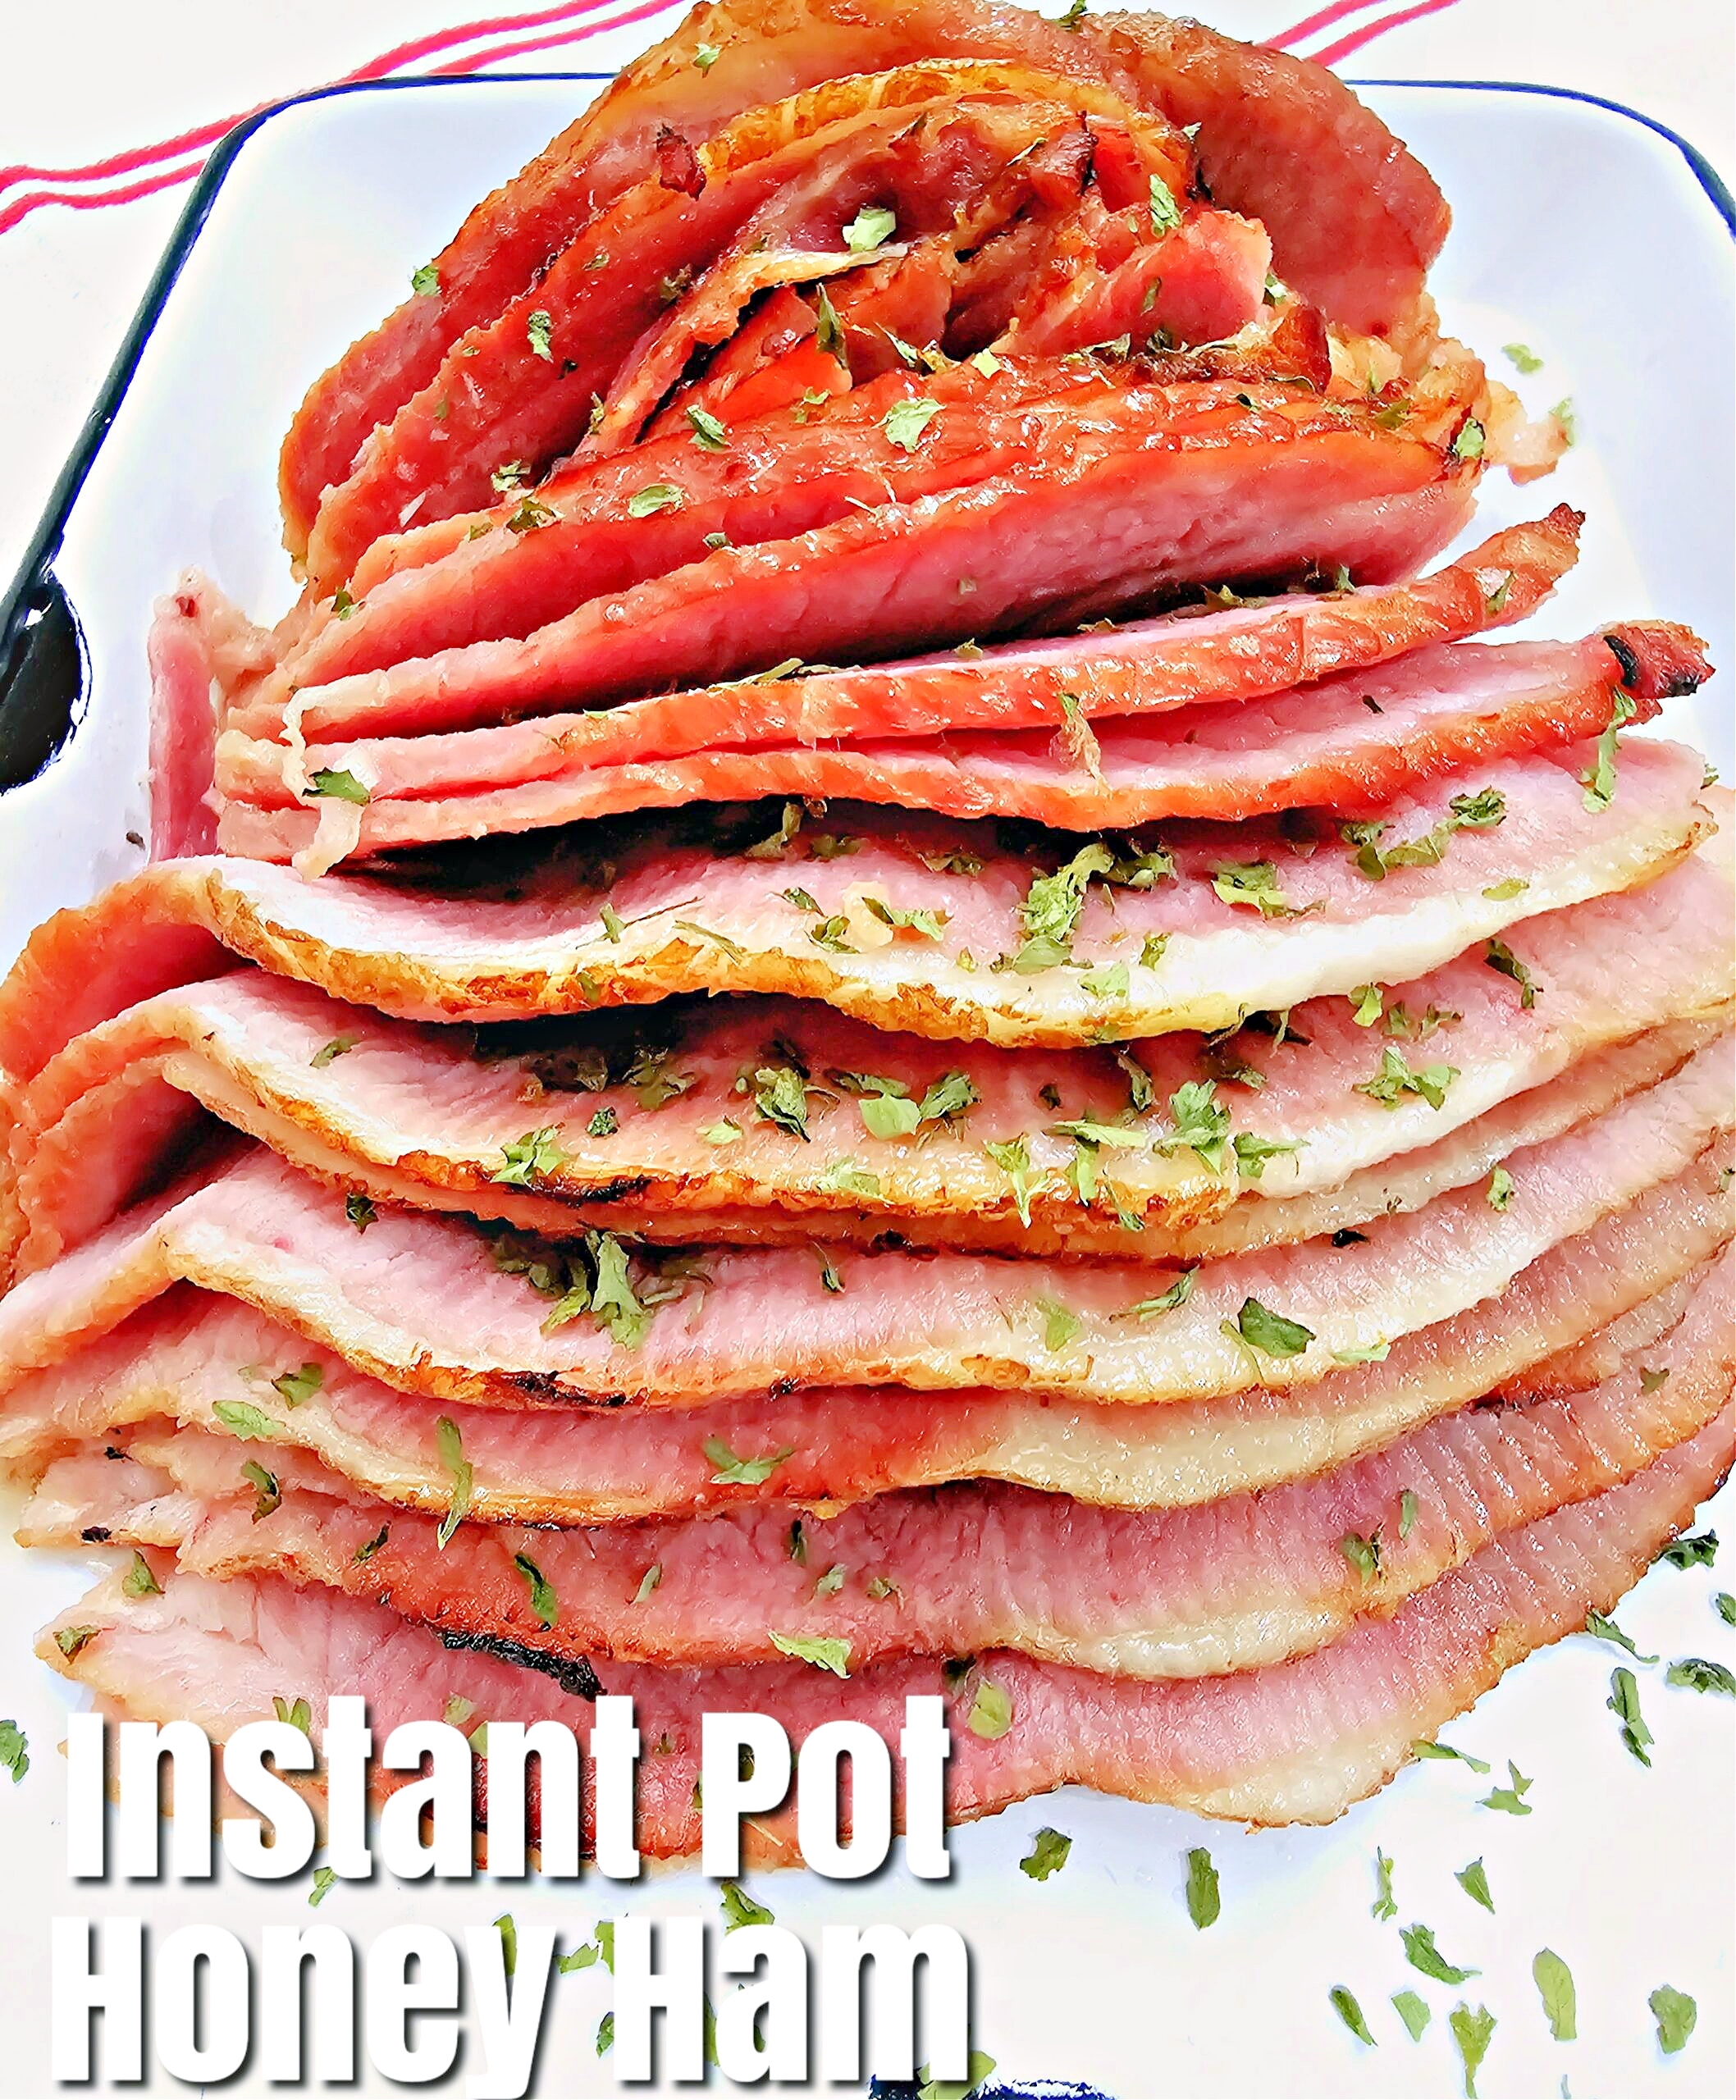 Instant Pot Honey Baked Ham #instantpot #bakedham #dinner #easydinner #onepotmeal